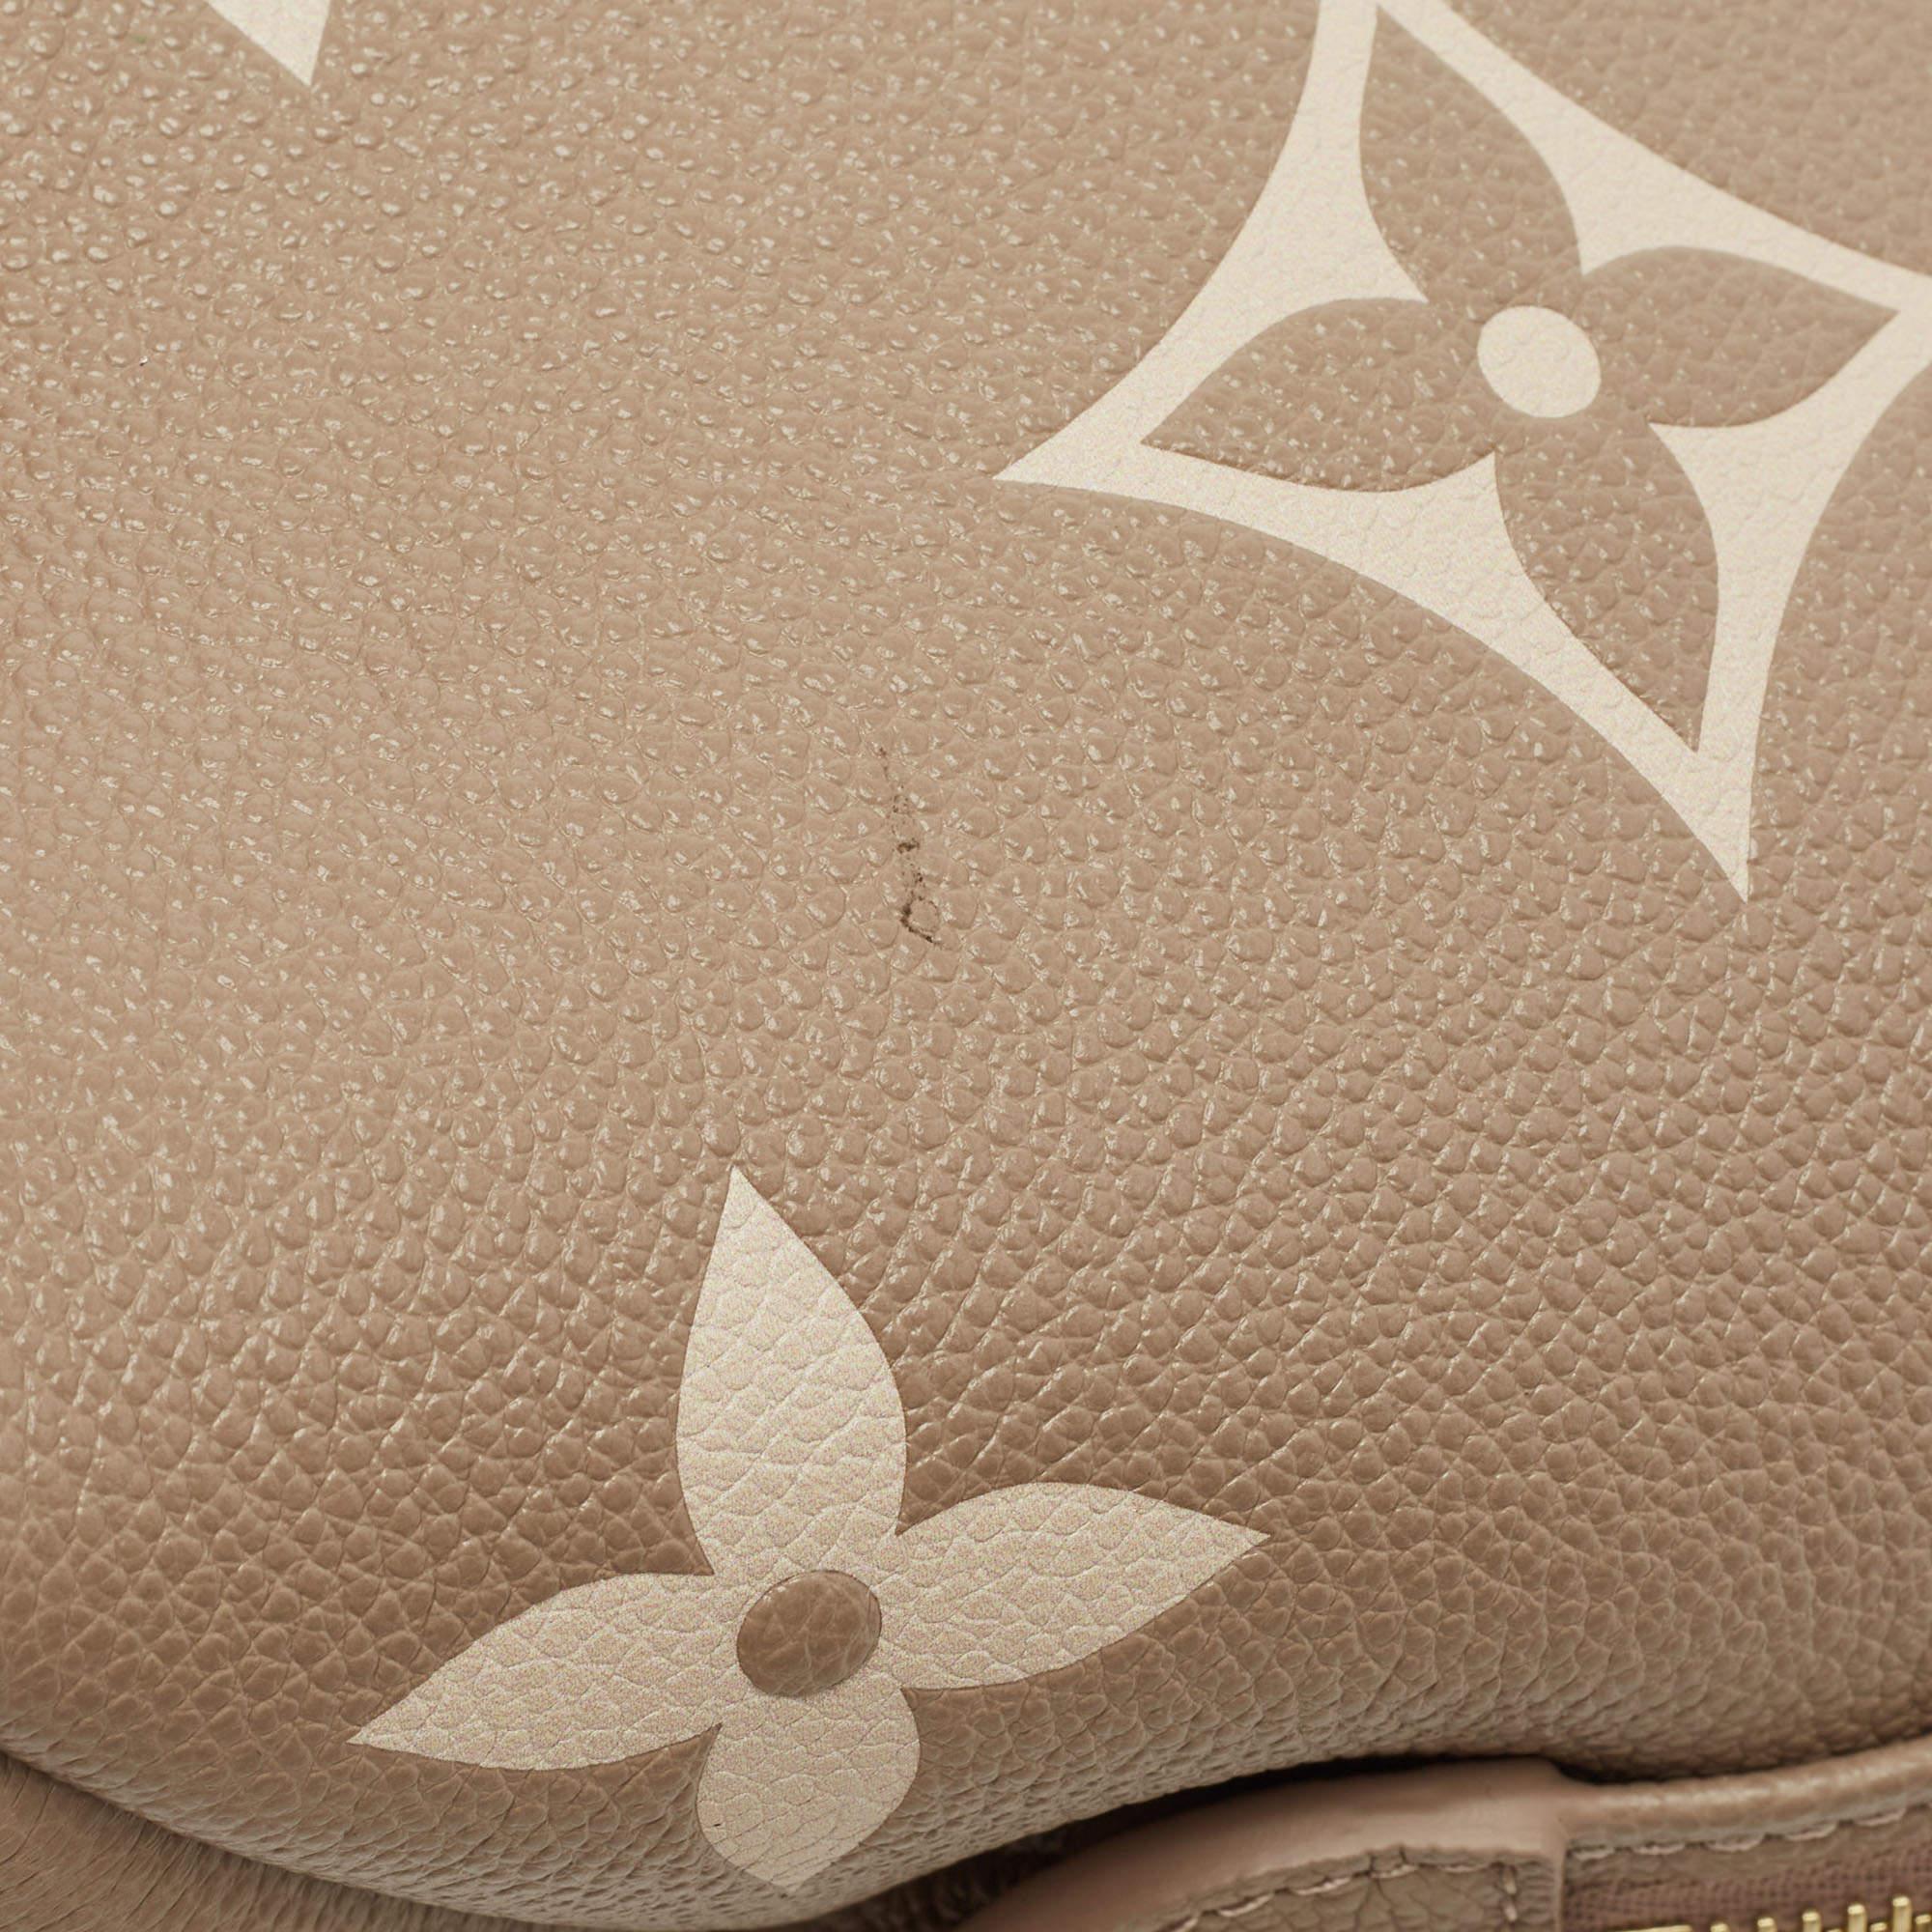 Louis Vuitton Bicolor Monogram Empriente Leather Petite Palais Bag 5